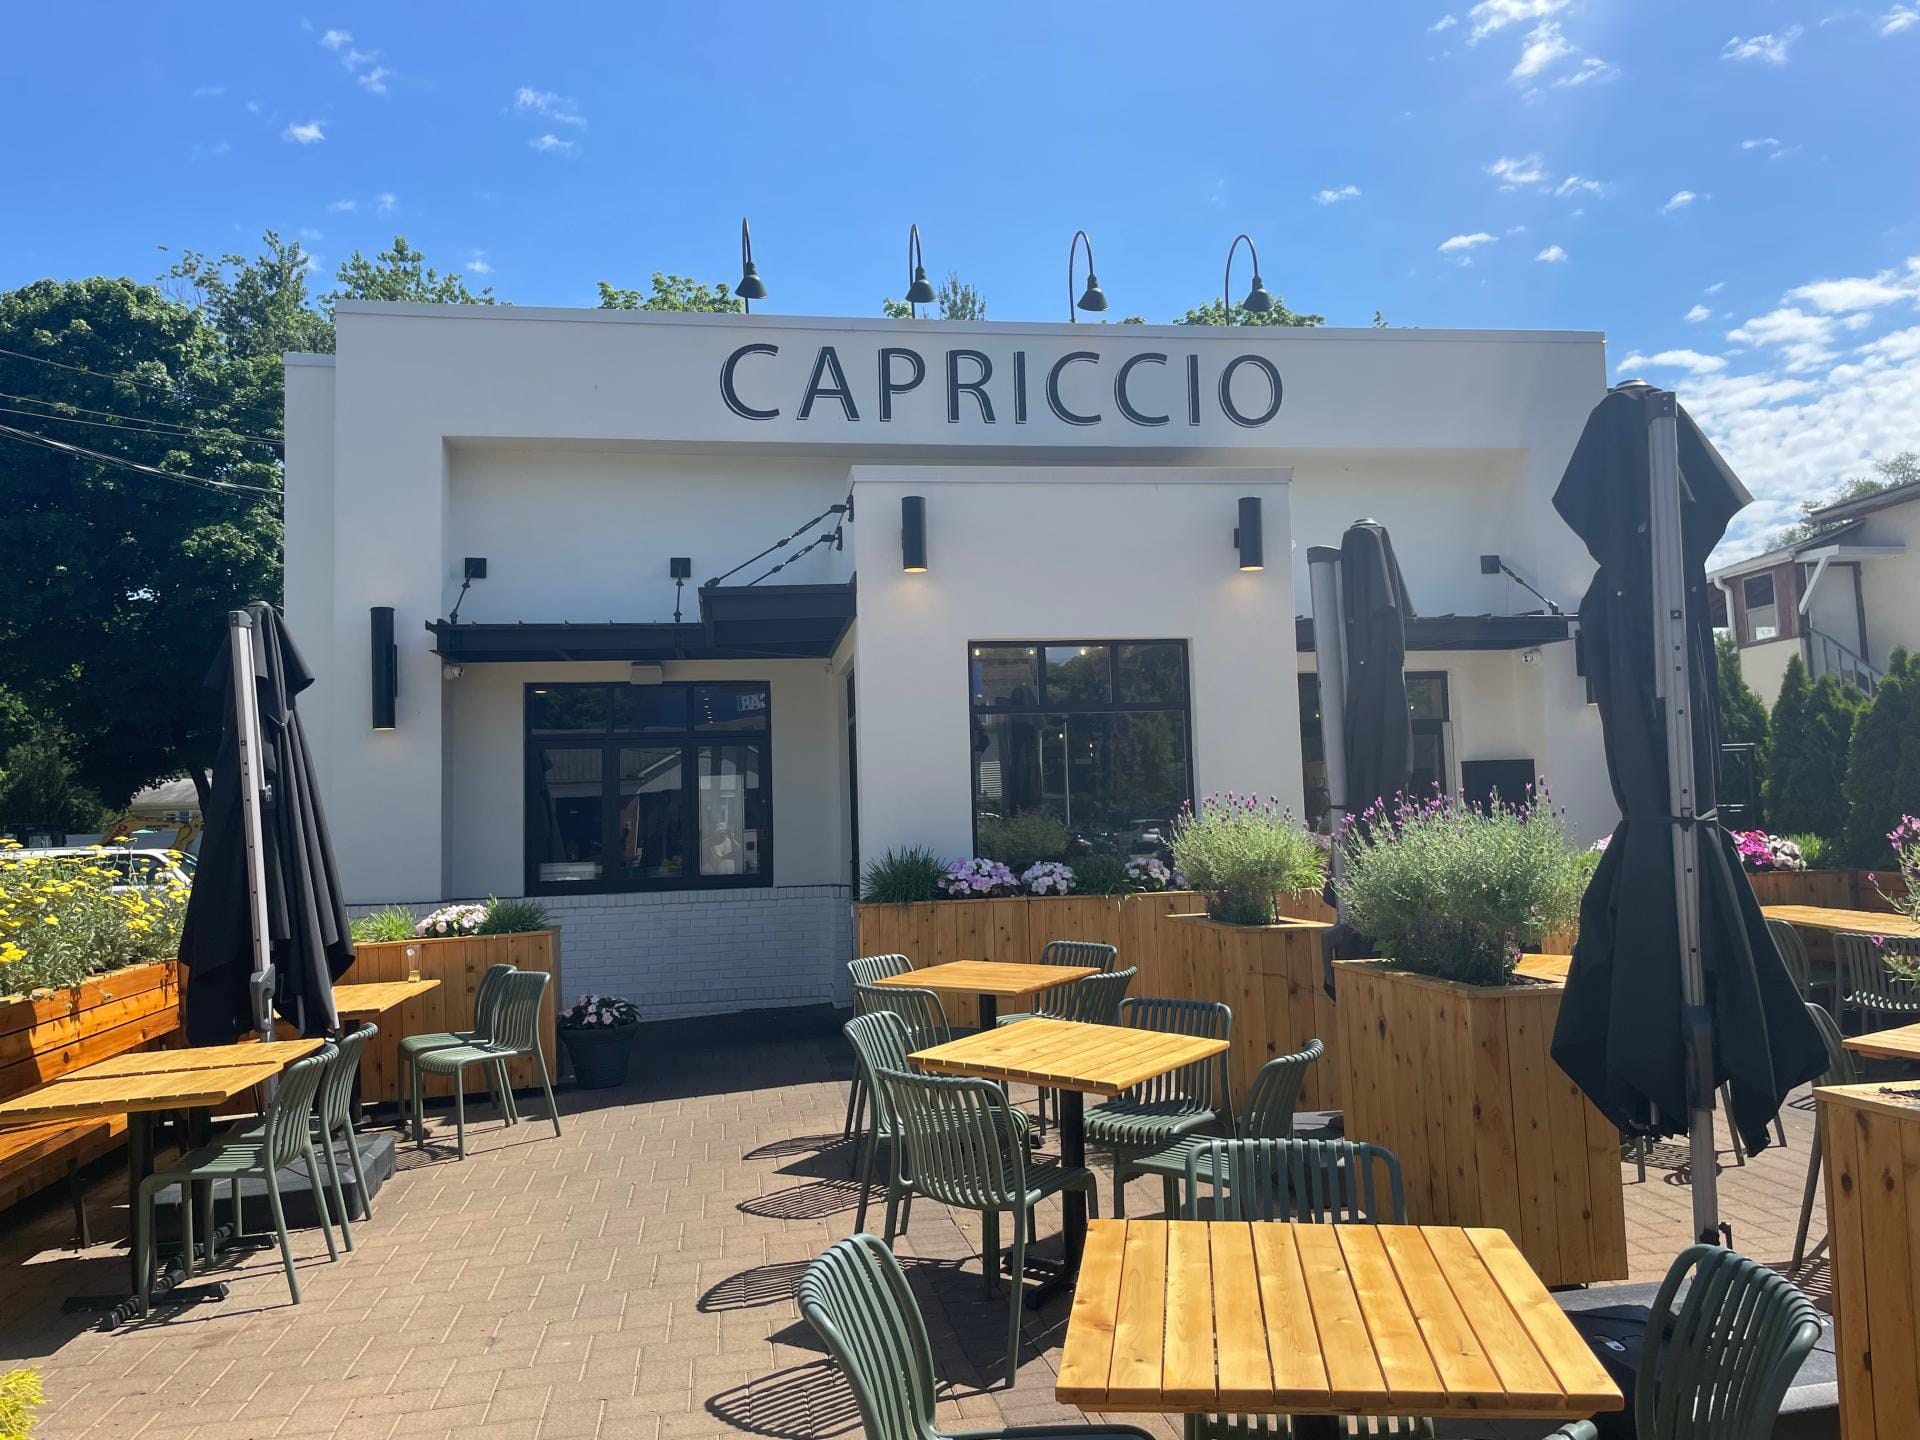 Capriccio Pizzeria and Restaurant